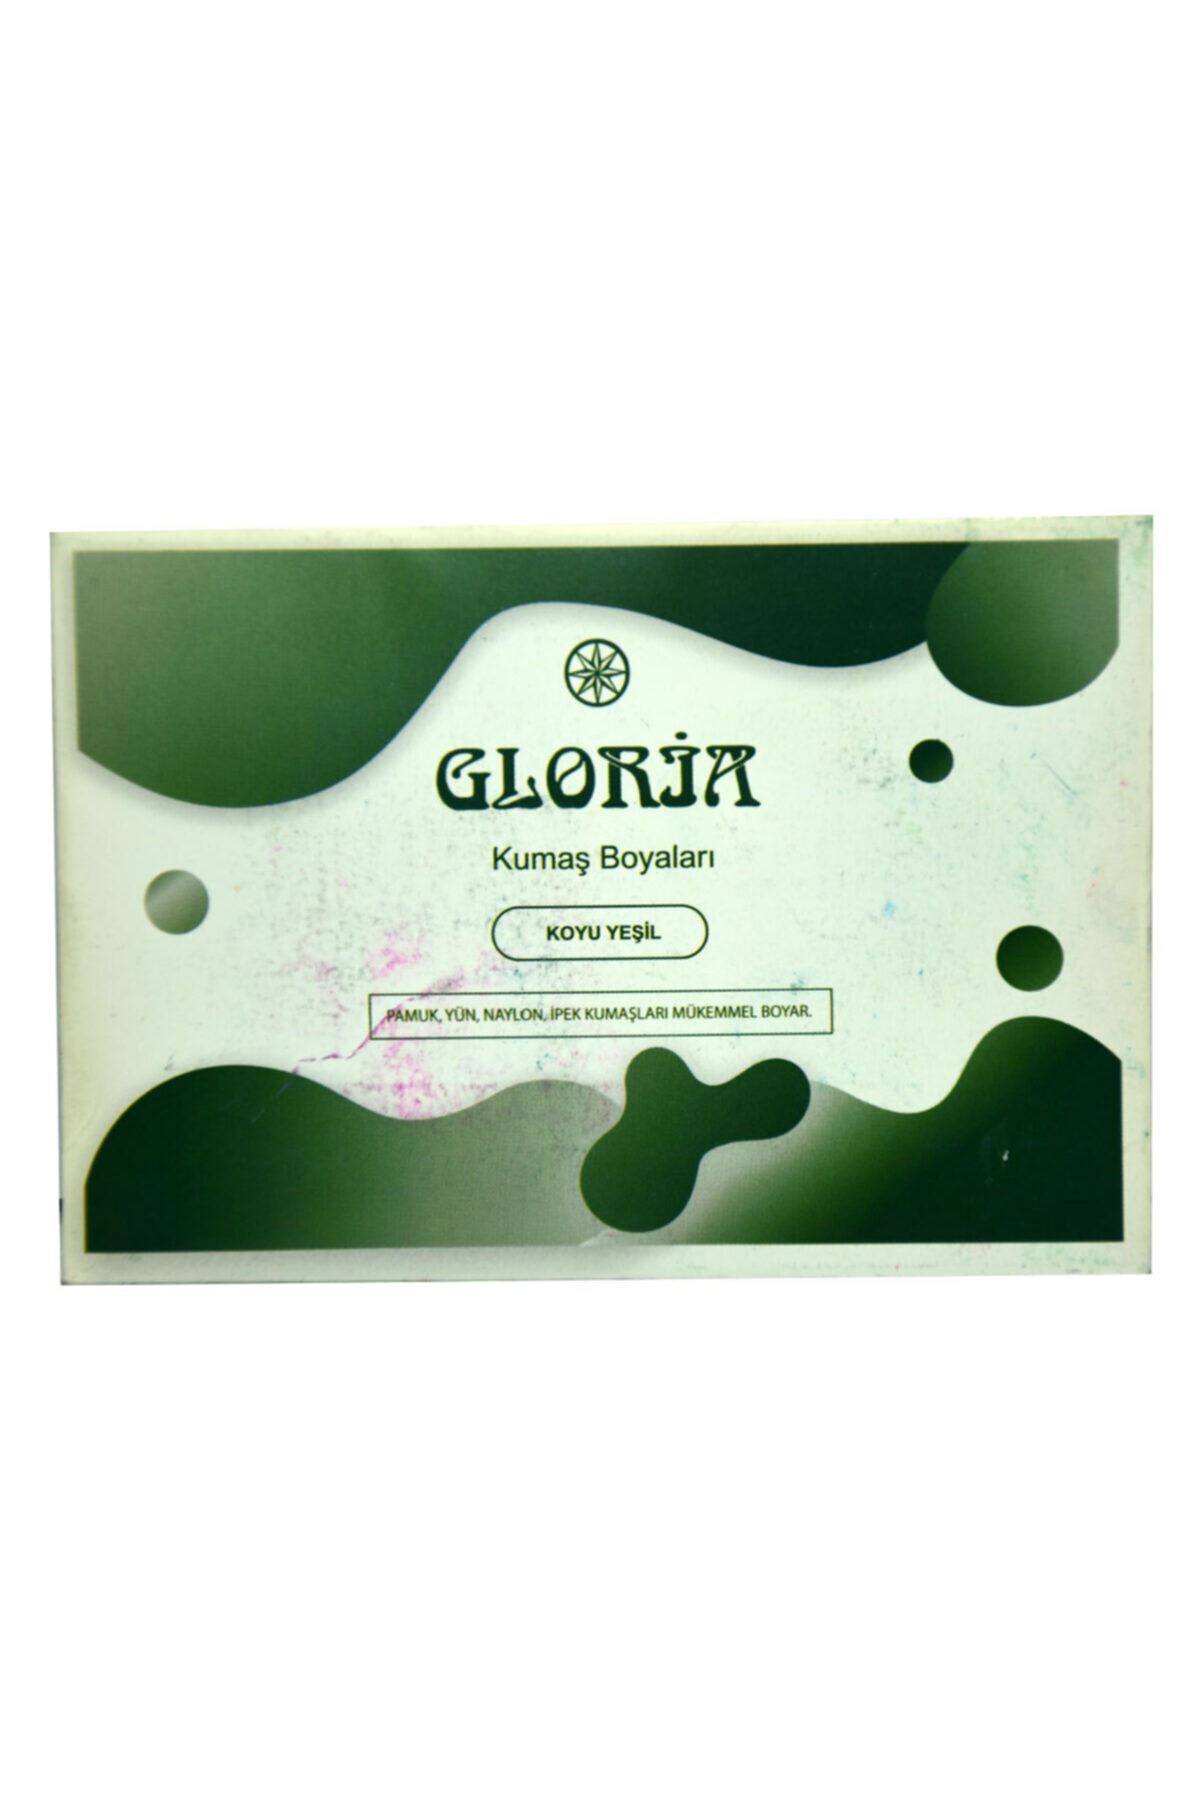 Gloria Koyu Yeşil Kumaş Boyası 10 gr